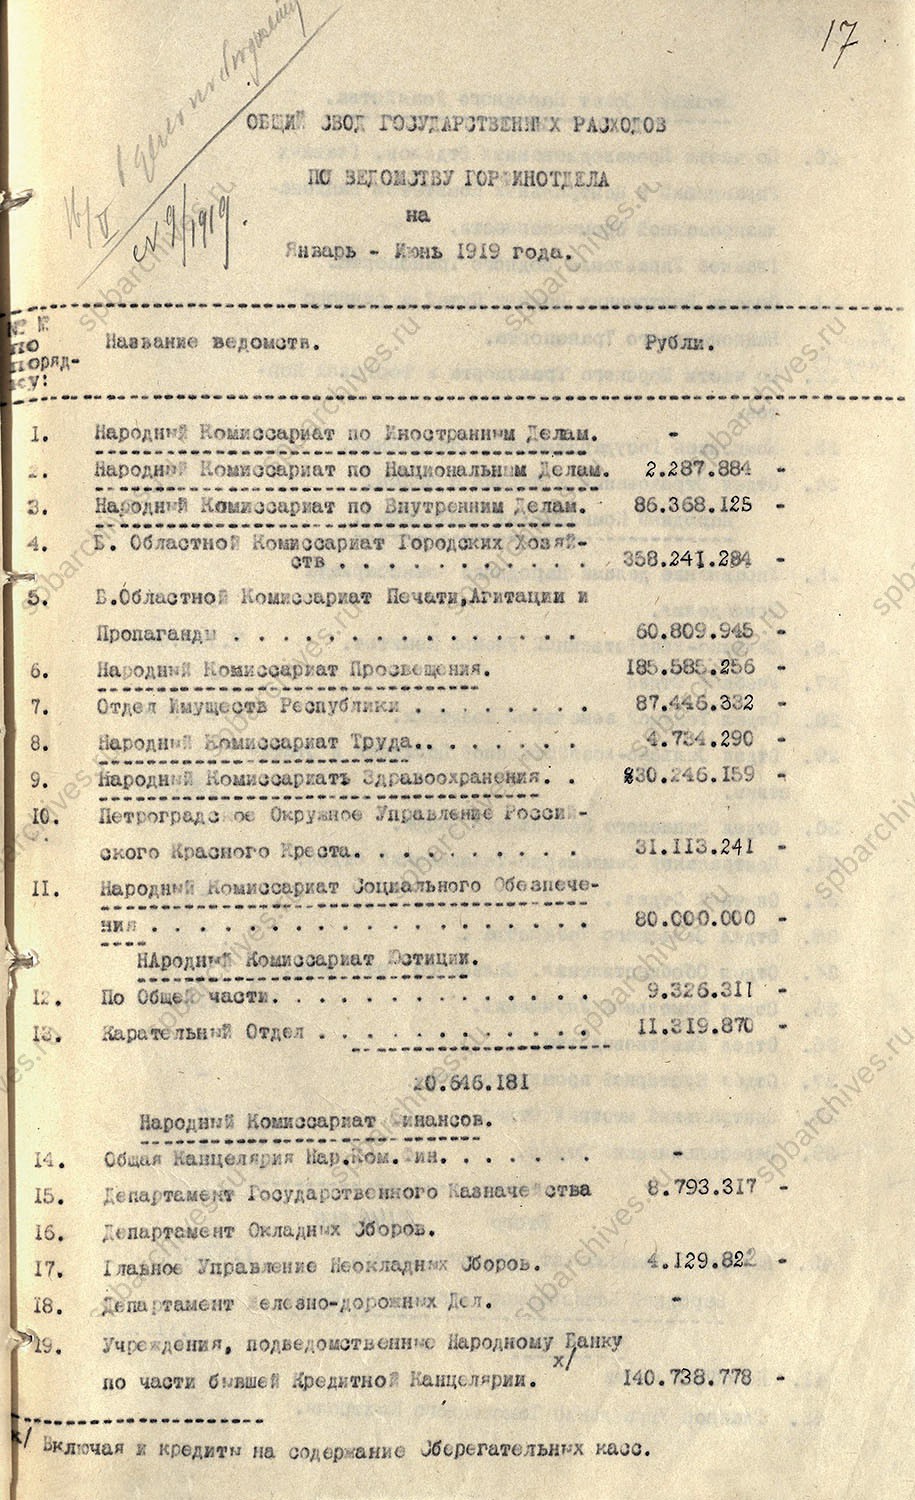 Дело по составлению бюджета г. Петрограда на I полугодие 1919 г. Не ранее 16 мая 1919 г.<br />
<em>ЦГА СПб. Ф.1963. Оп.61. Д.5. Обложка. Л.17-18, 25-28.</em>